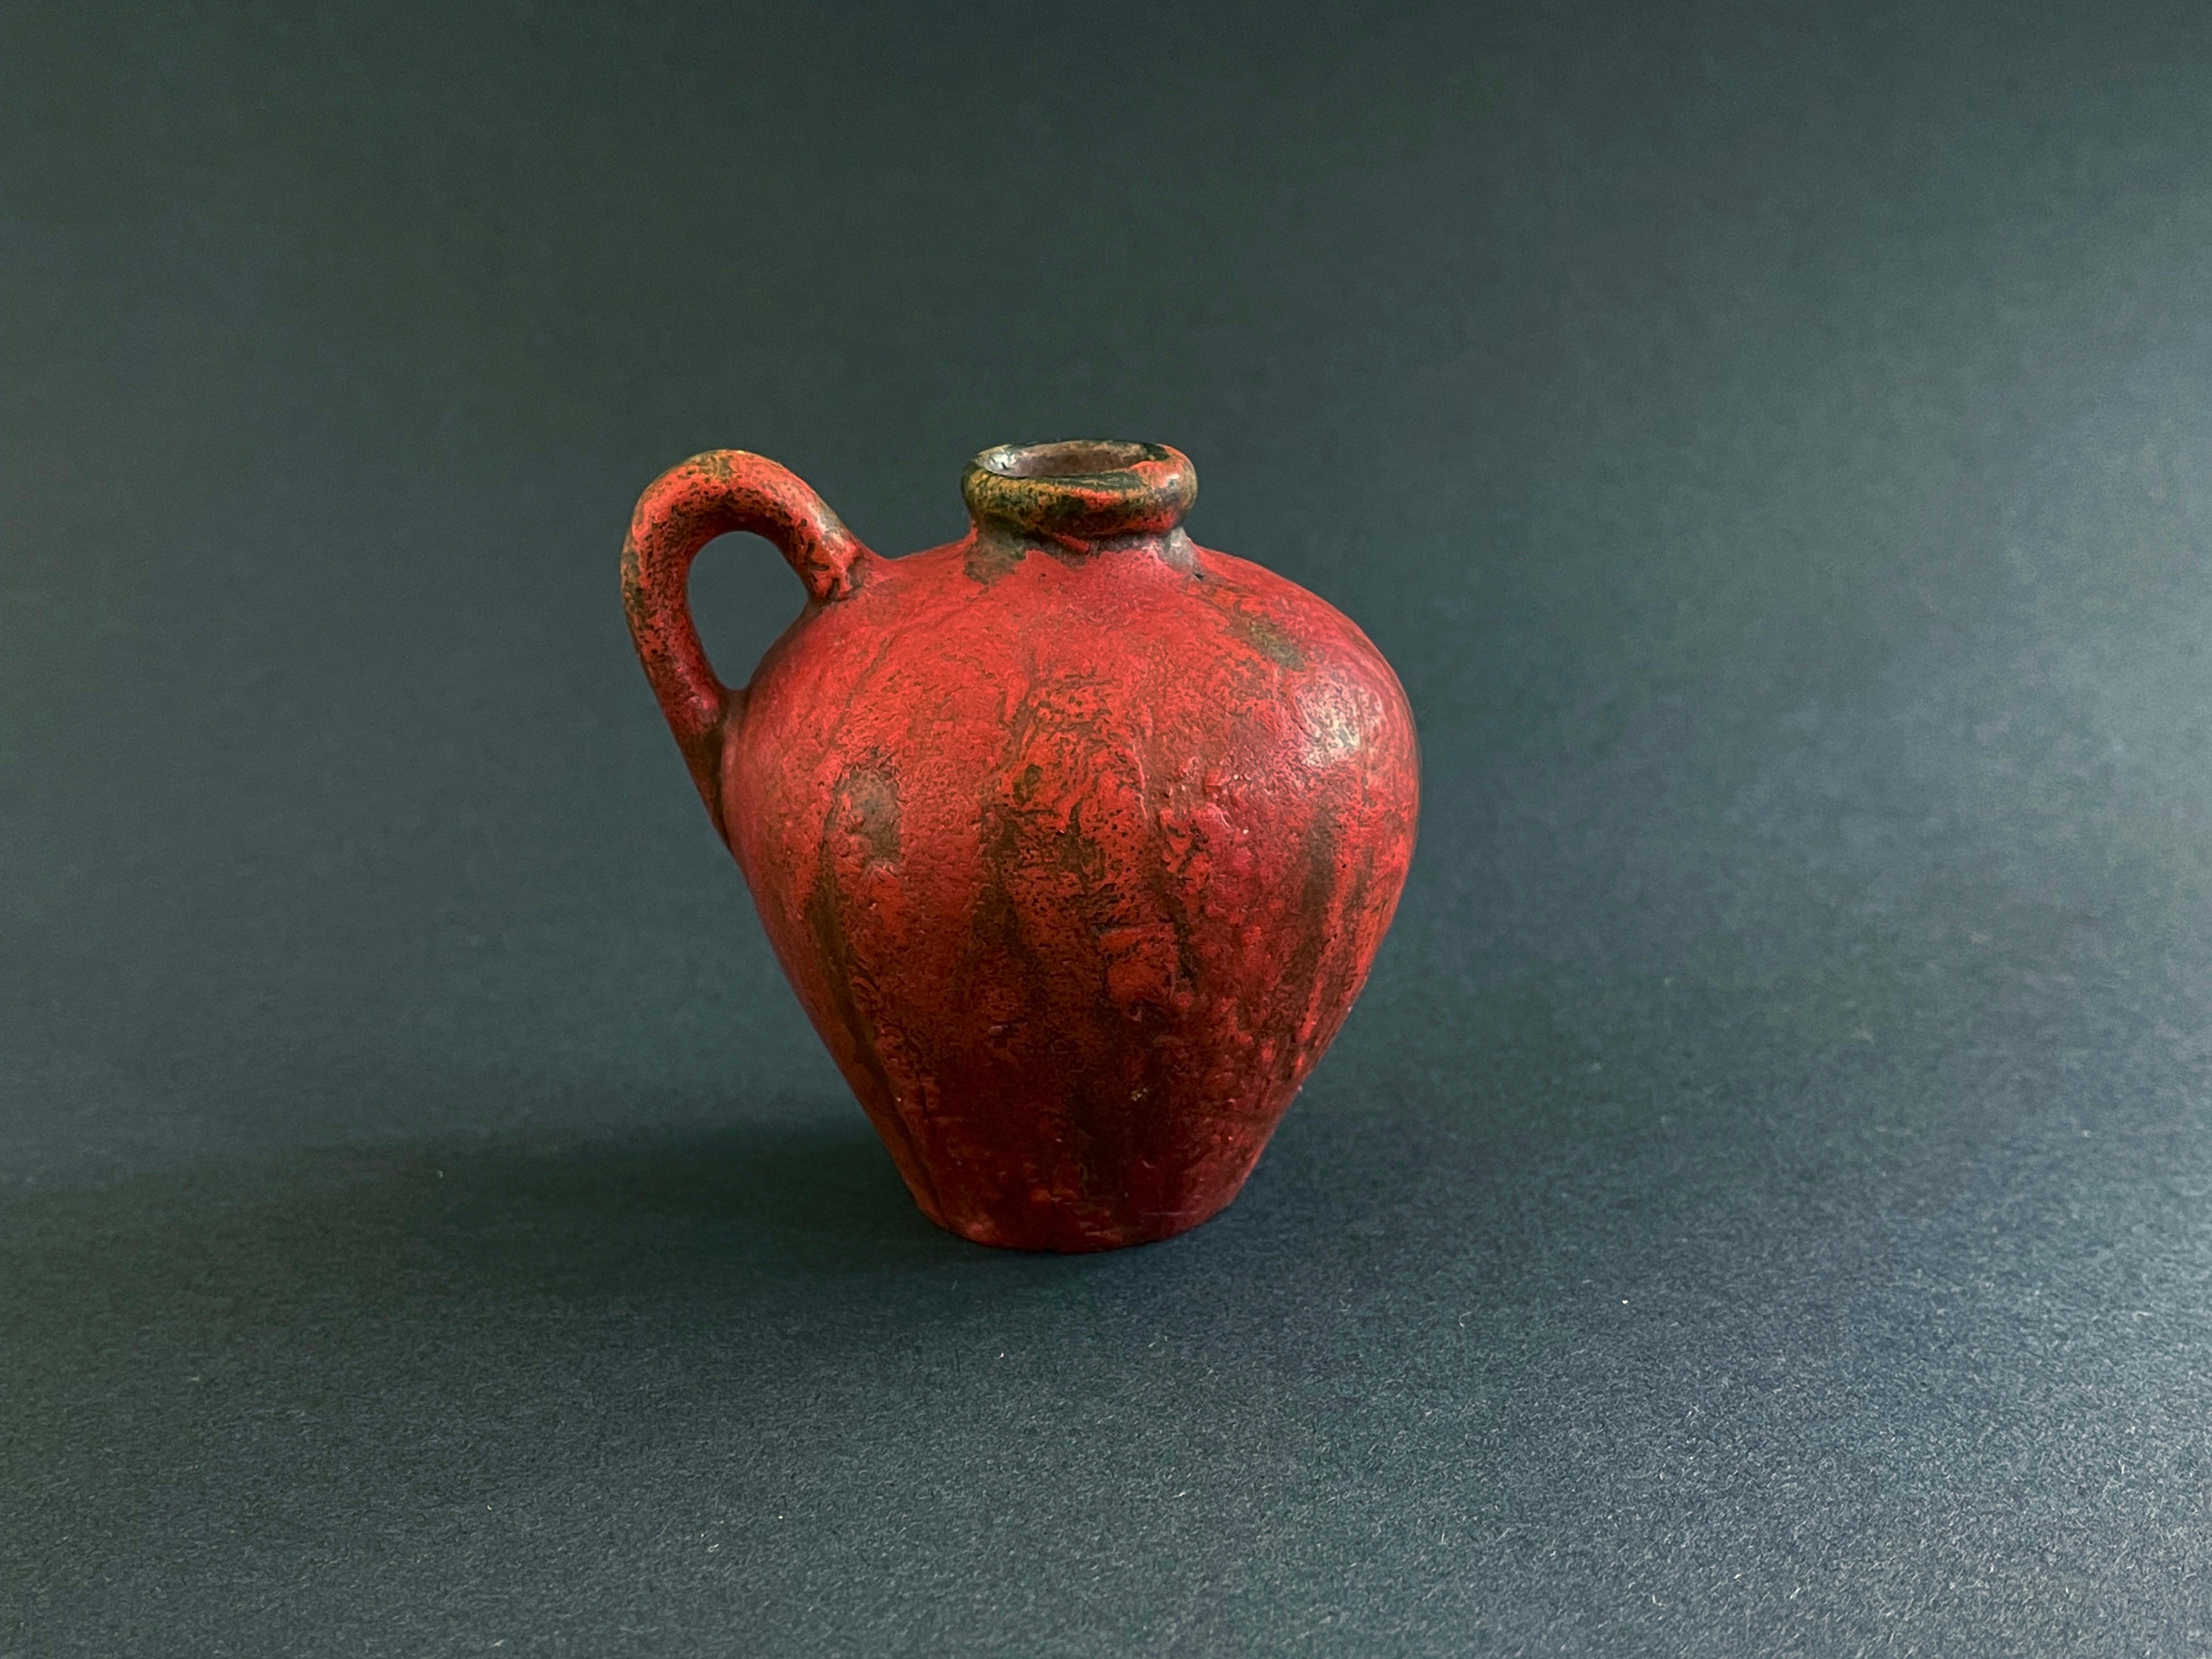 Funky Fat Lava in rosso lava: vaso in ceramica di metà secolo della serie ''vulcano''.
Eseguita da Kurt Tschörner, intorno al 1960 per Ruscha, Germania occidentale. 
Smalto Fat Lava leggermente spumeggiante in un rosso medio più opaco.

Kurt è uno